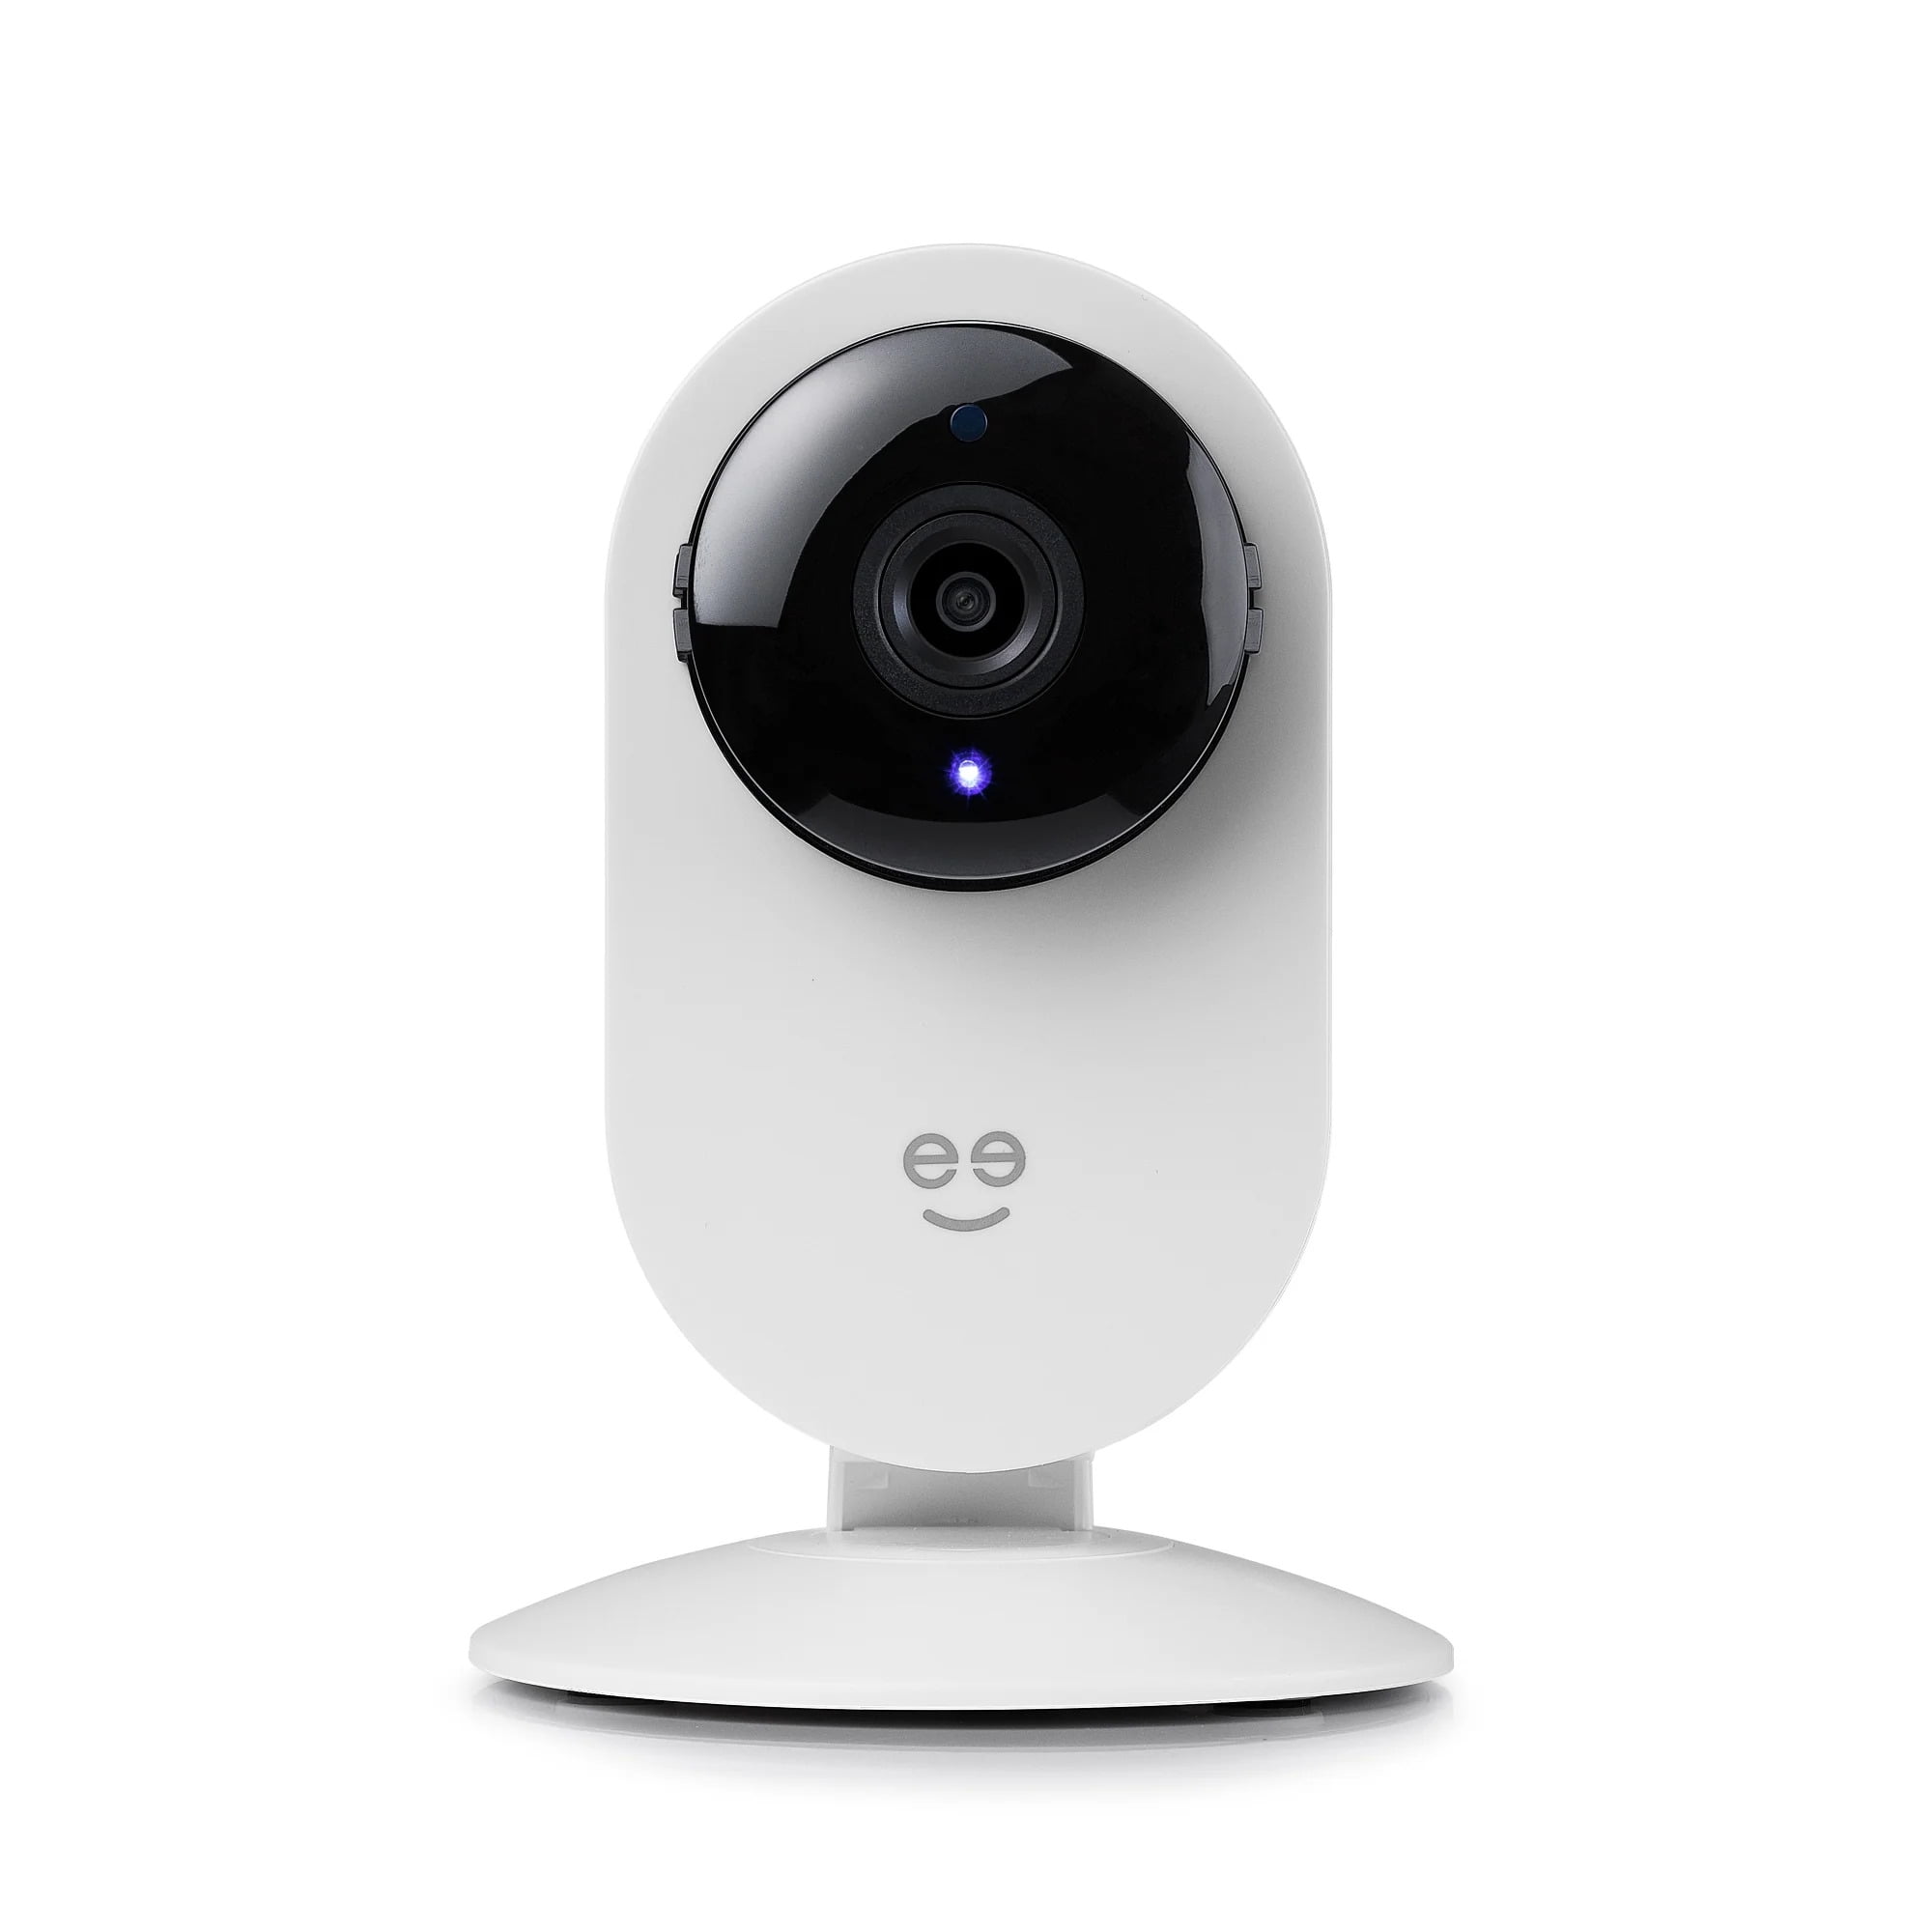 Geeni Glimpse 1080p HD Smart Camera Indoor Home Security Camera No